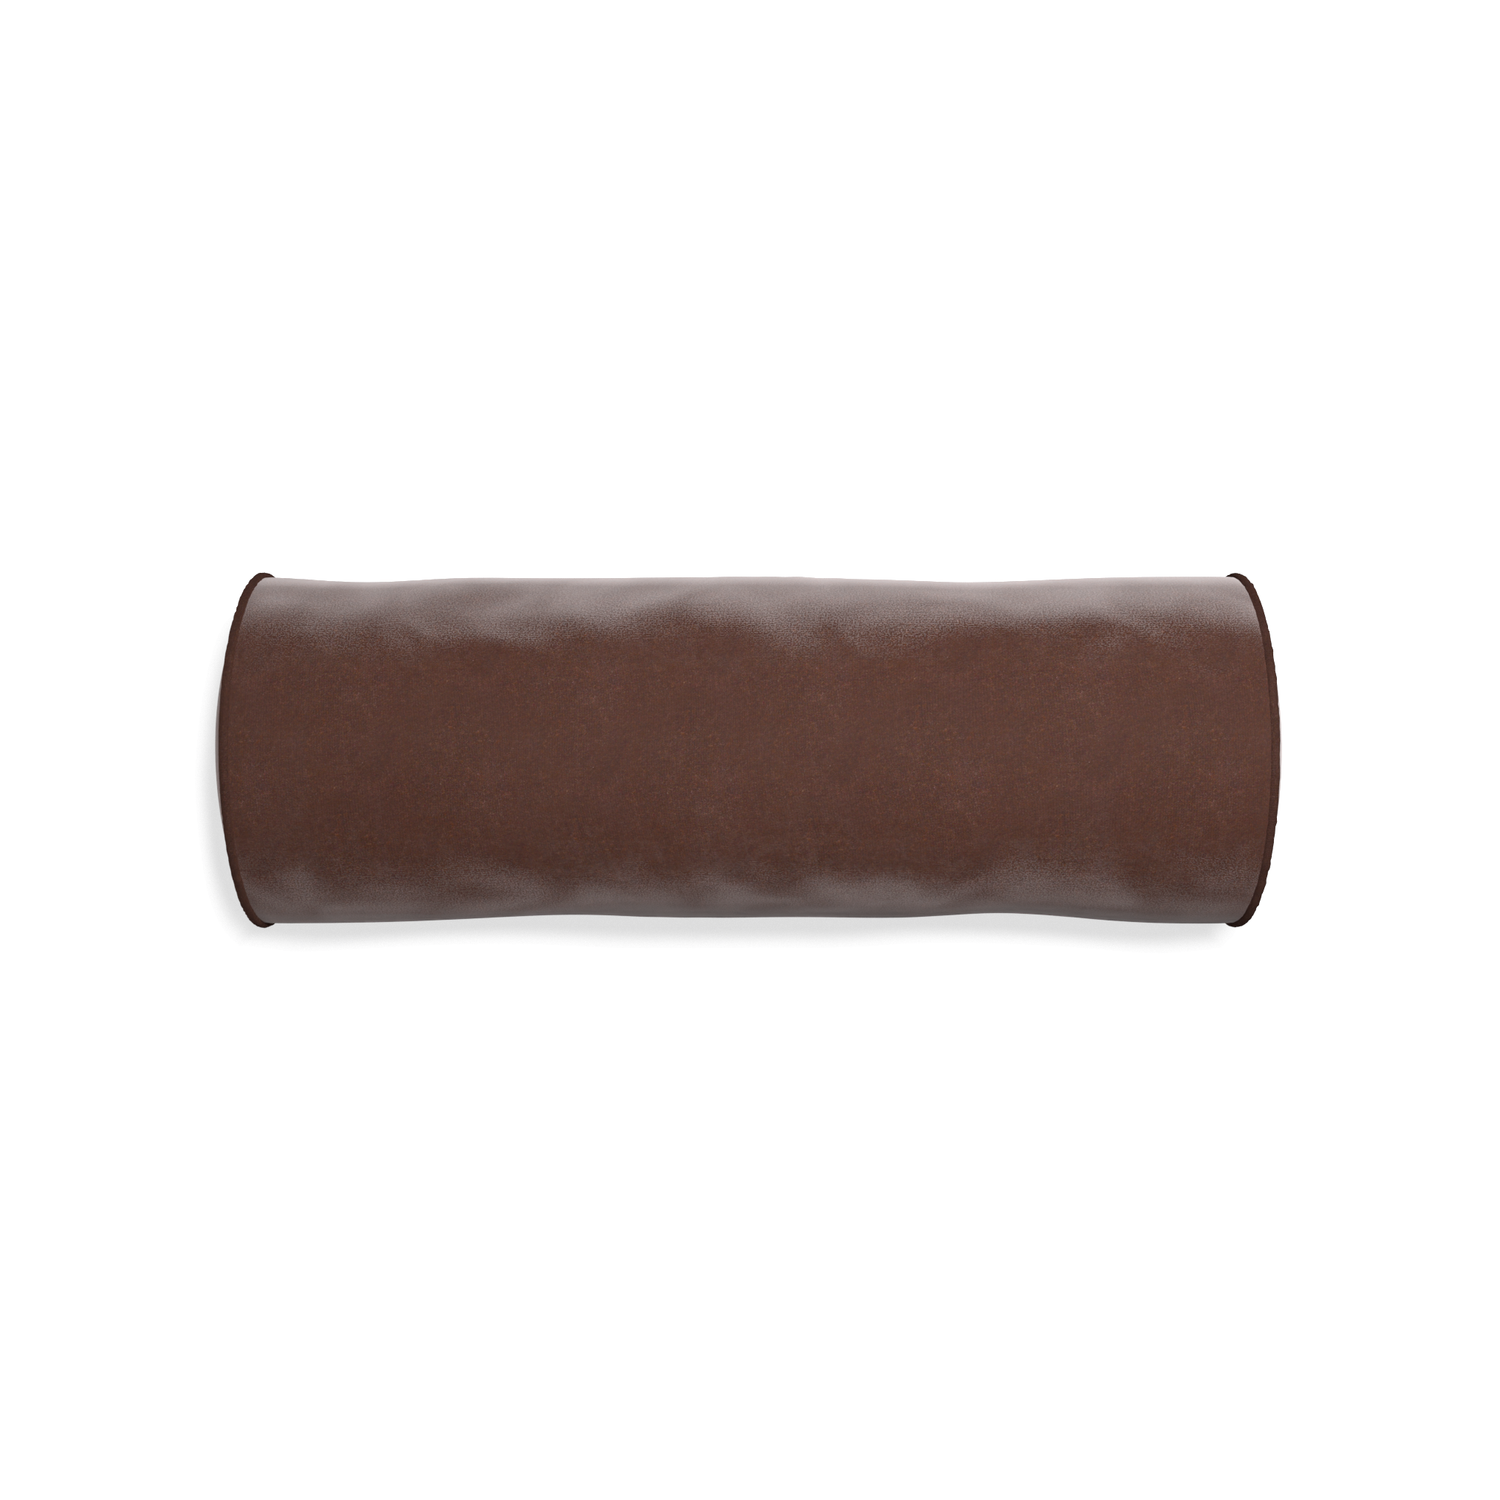 Bolster walnut velvet custom pillow with w piping on white background